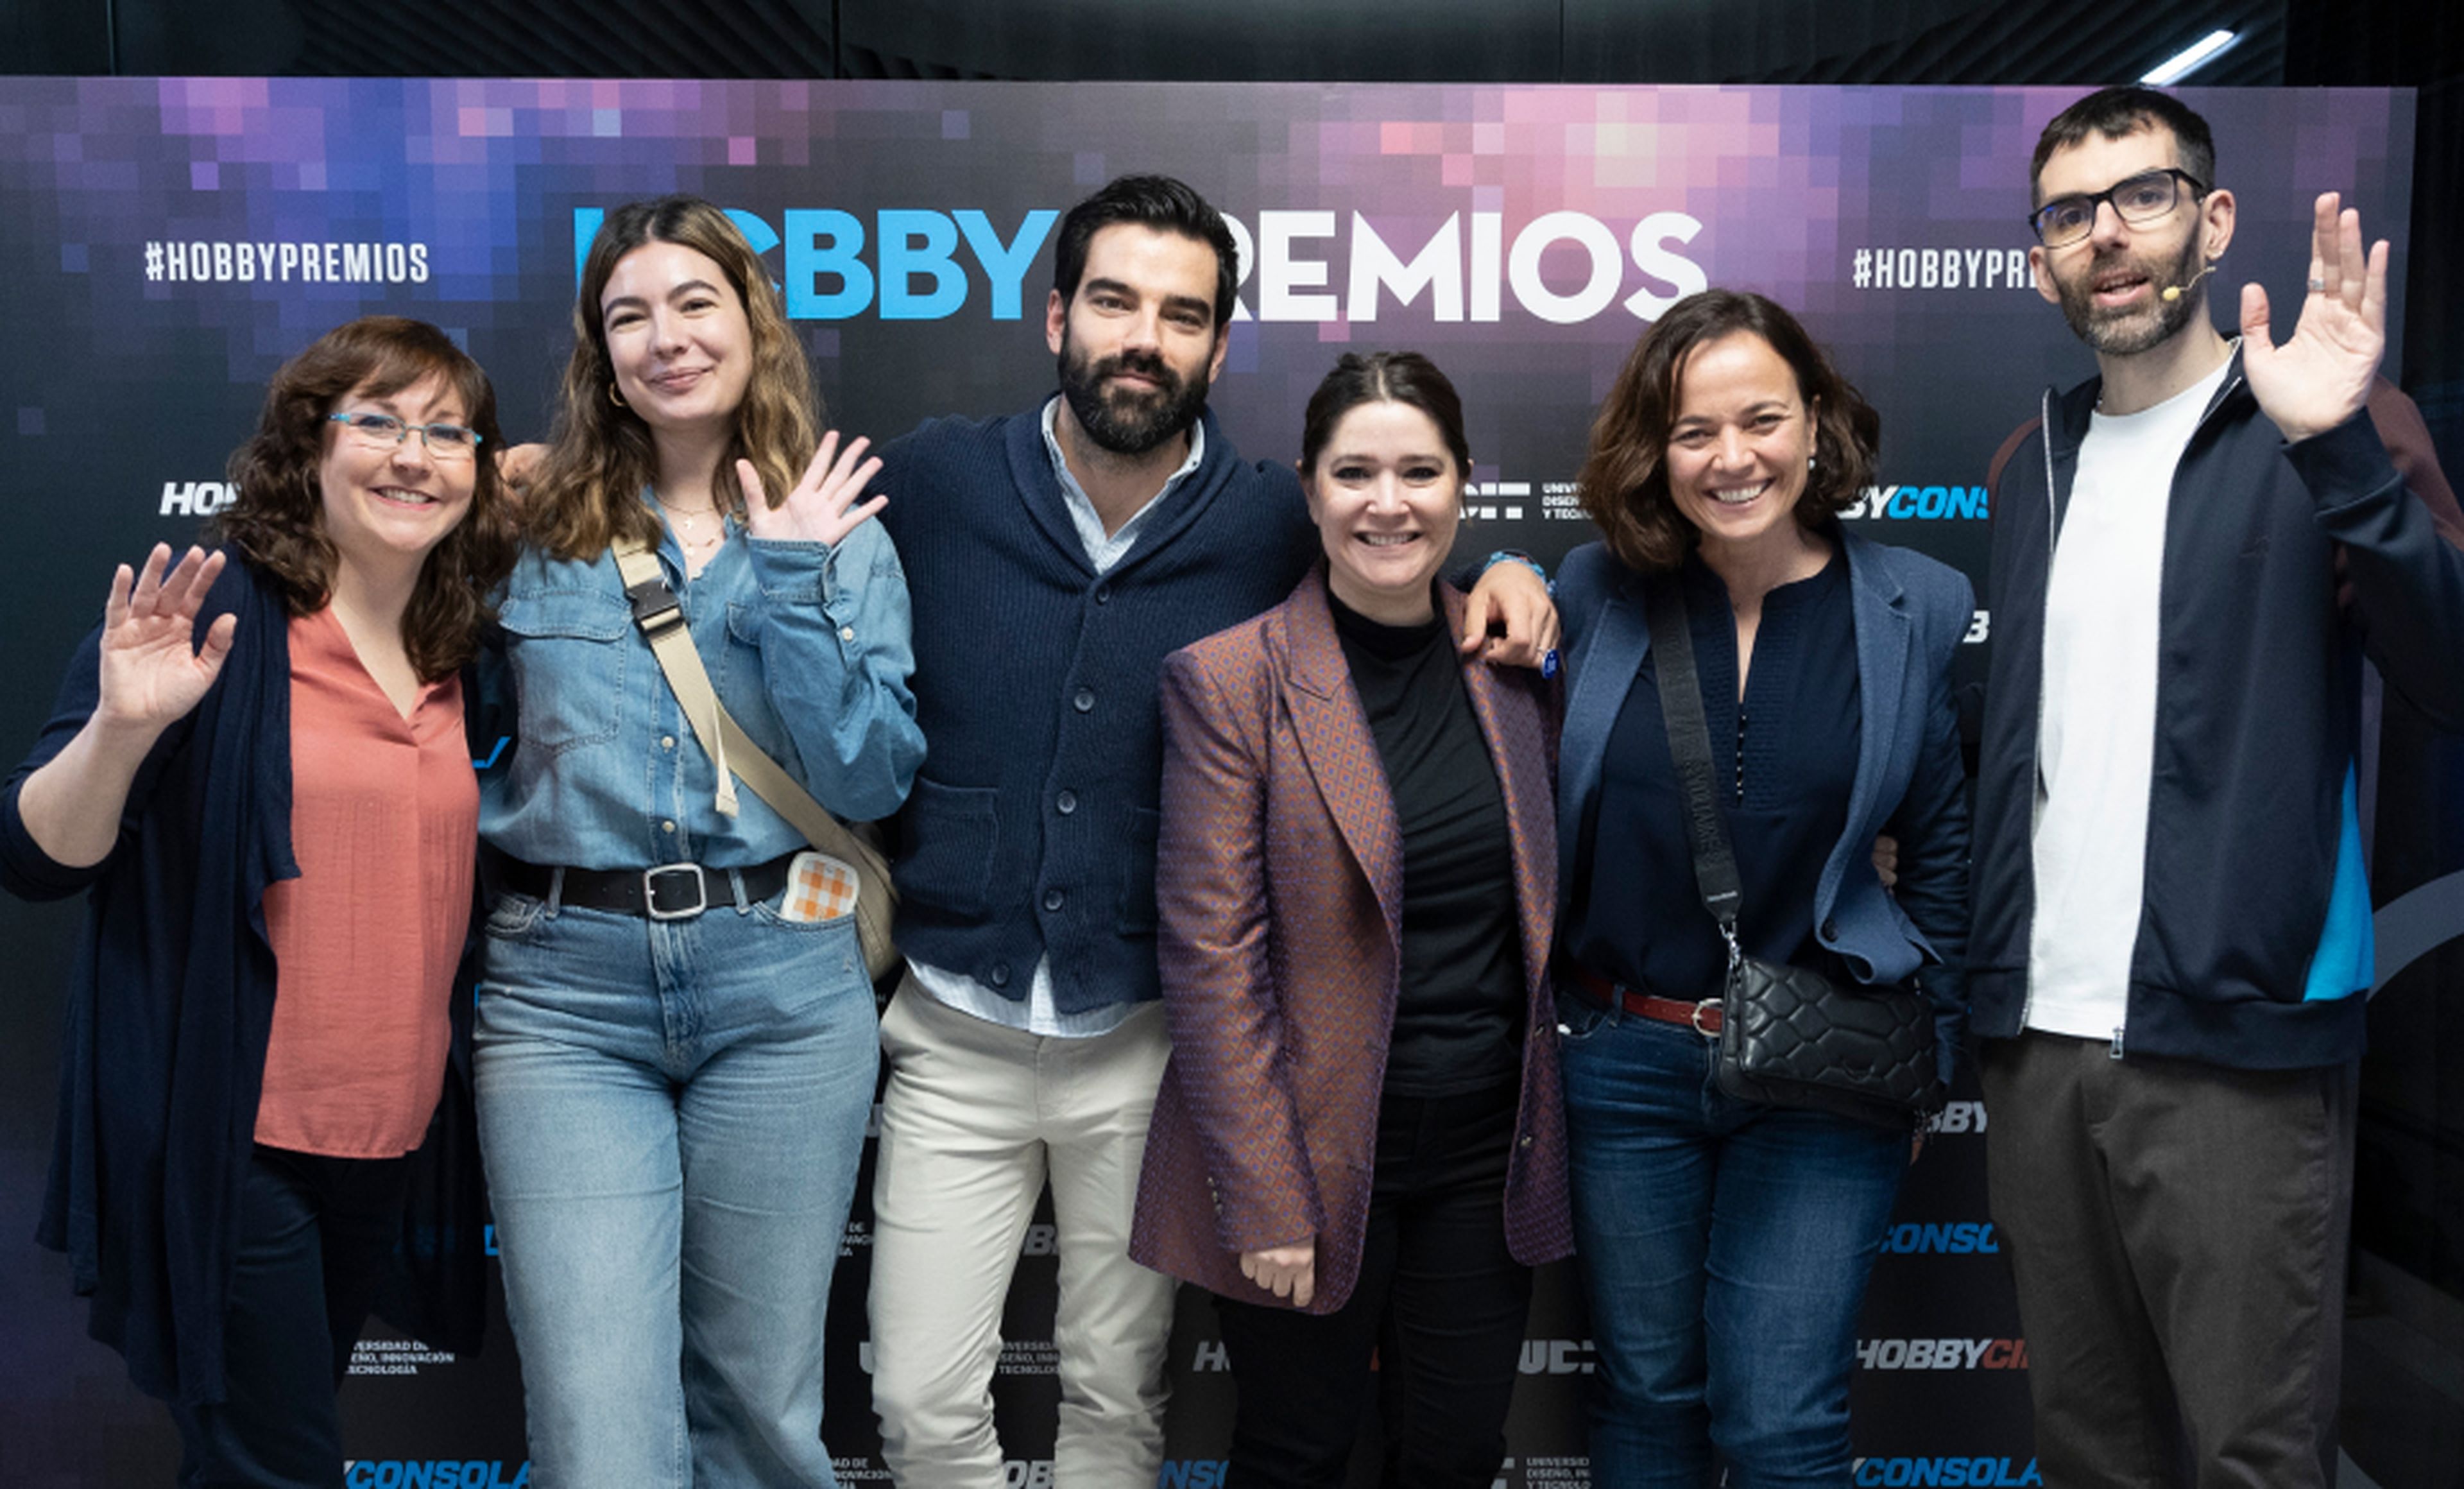 De izquierda a derecha: Raquel Hernández de HobbyCine, Claudia Perote, Ángel Larroca, Sara Pérez y Almudena Fernández de Diamond Films, y Ekaitz Ortega de HobbyCine.